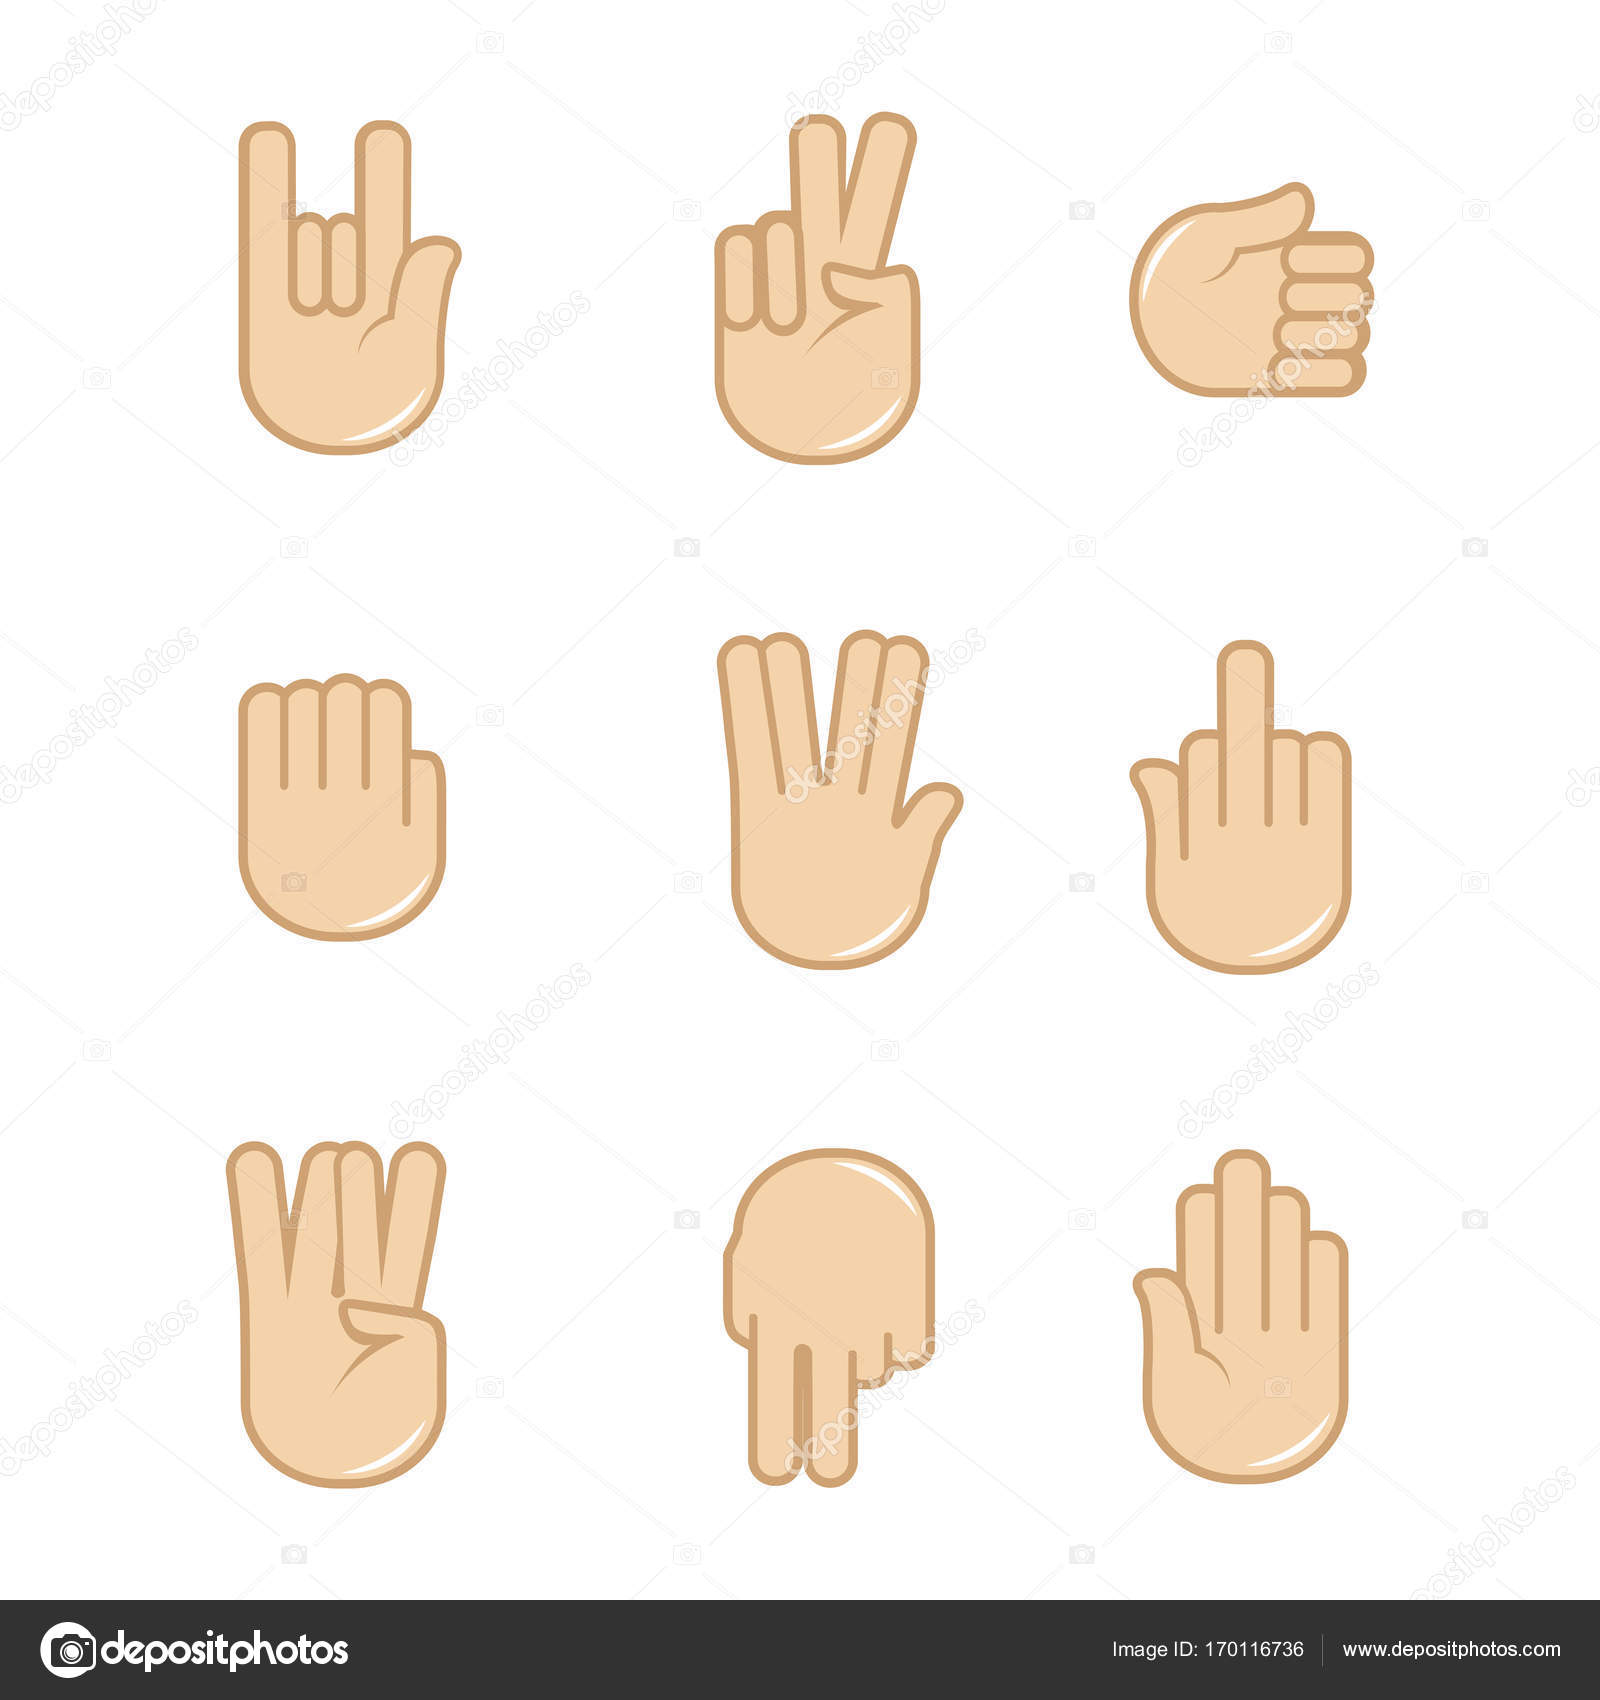 Mano arriba - Iconos gratis de manos y gestos